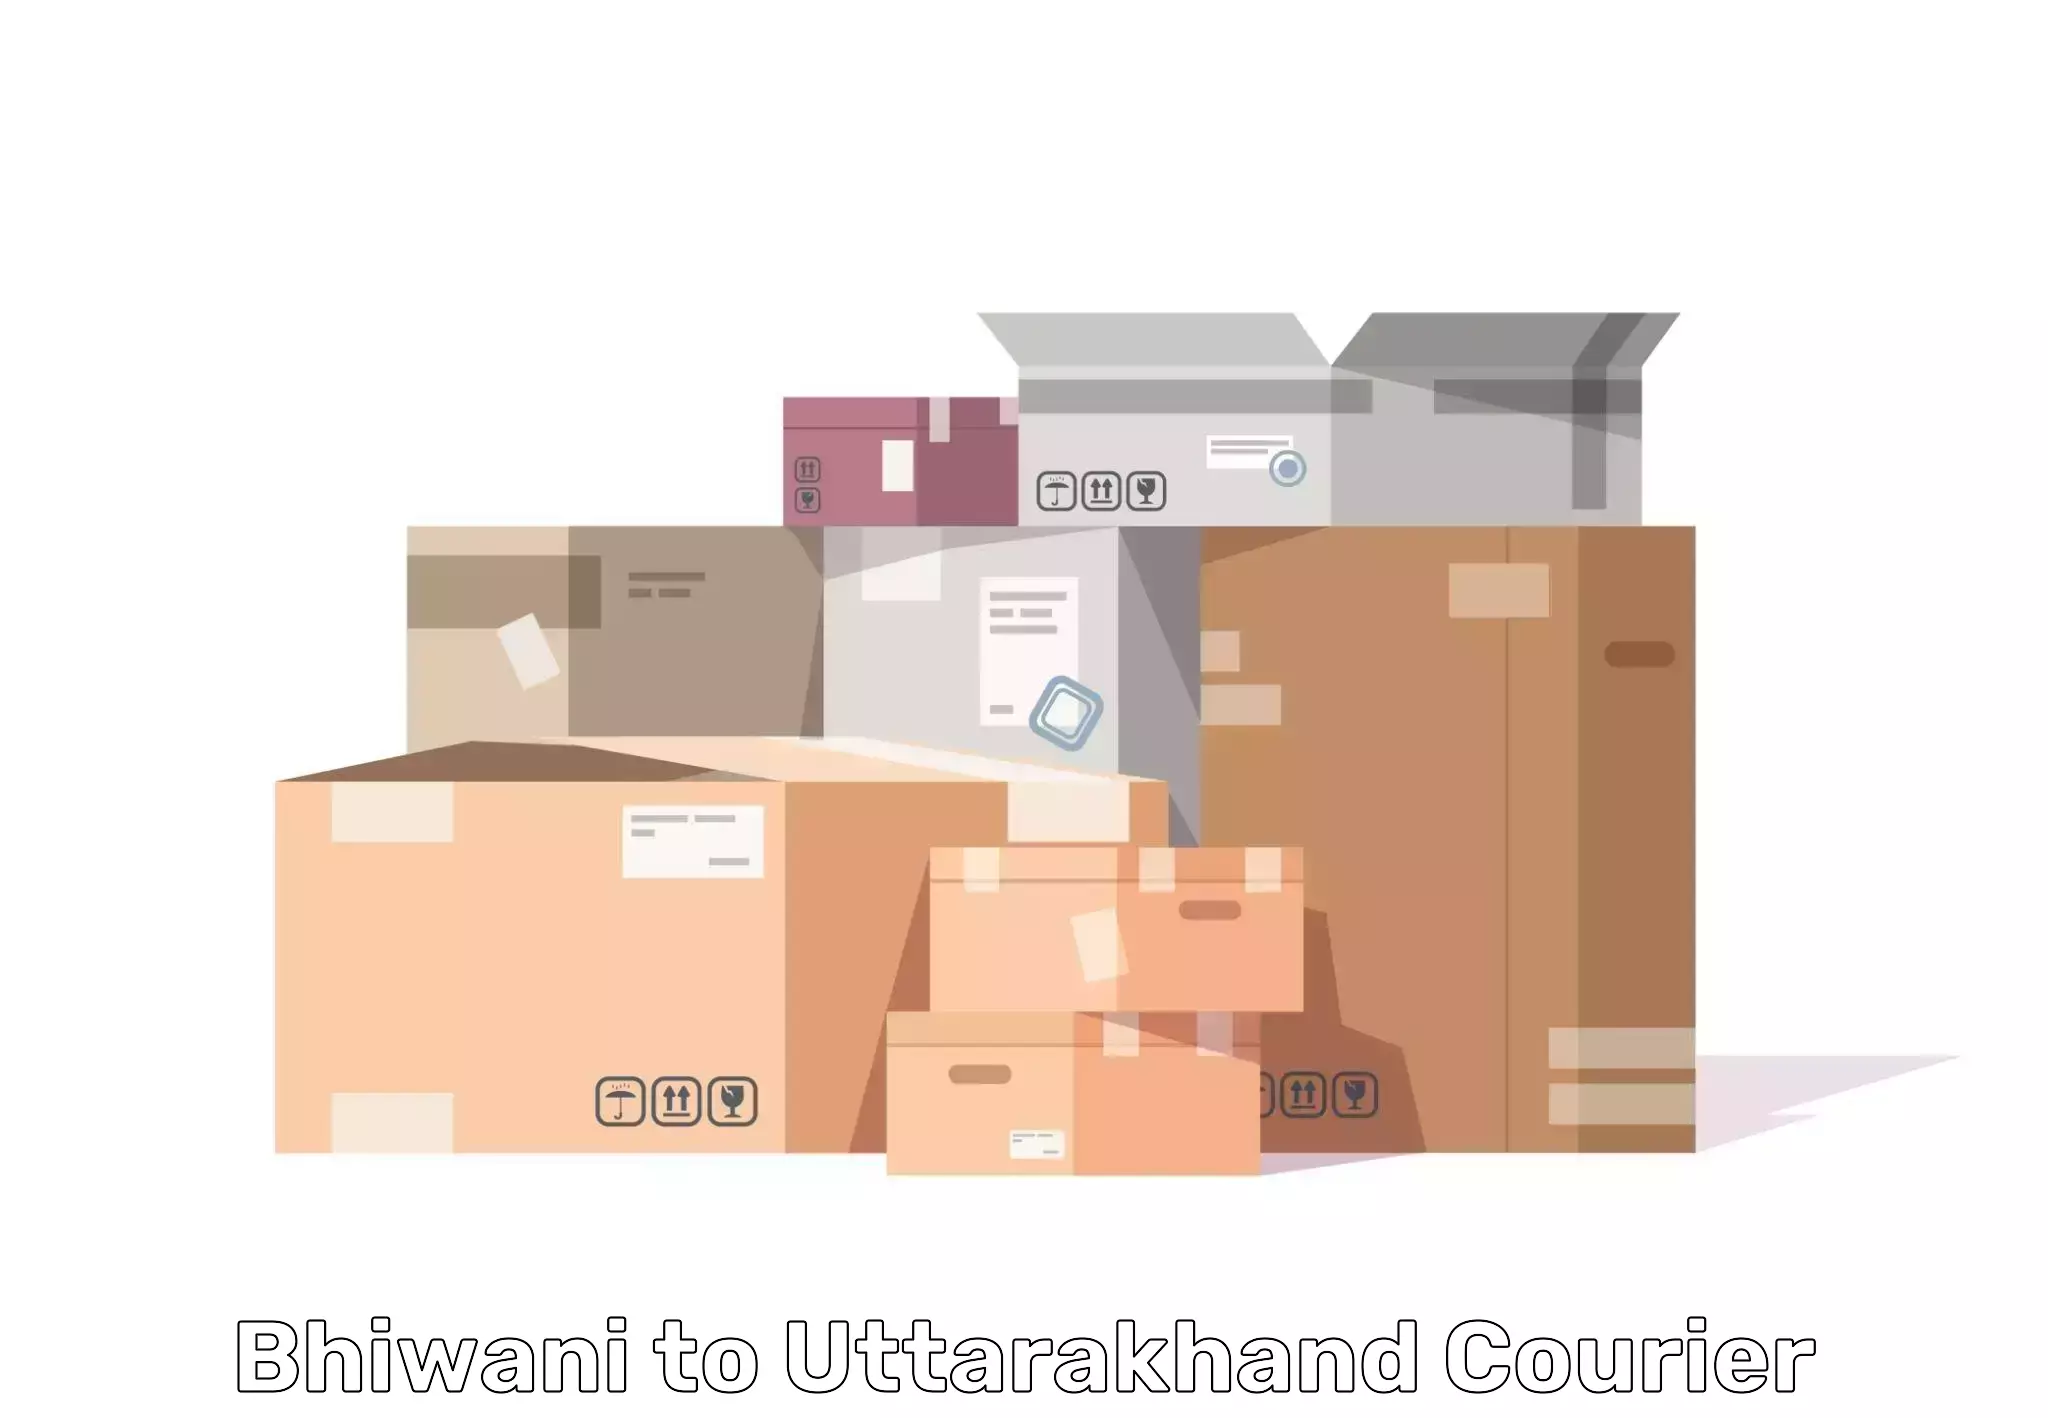 Furniture transport company Bhiwani to Uttarakhand